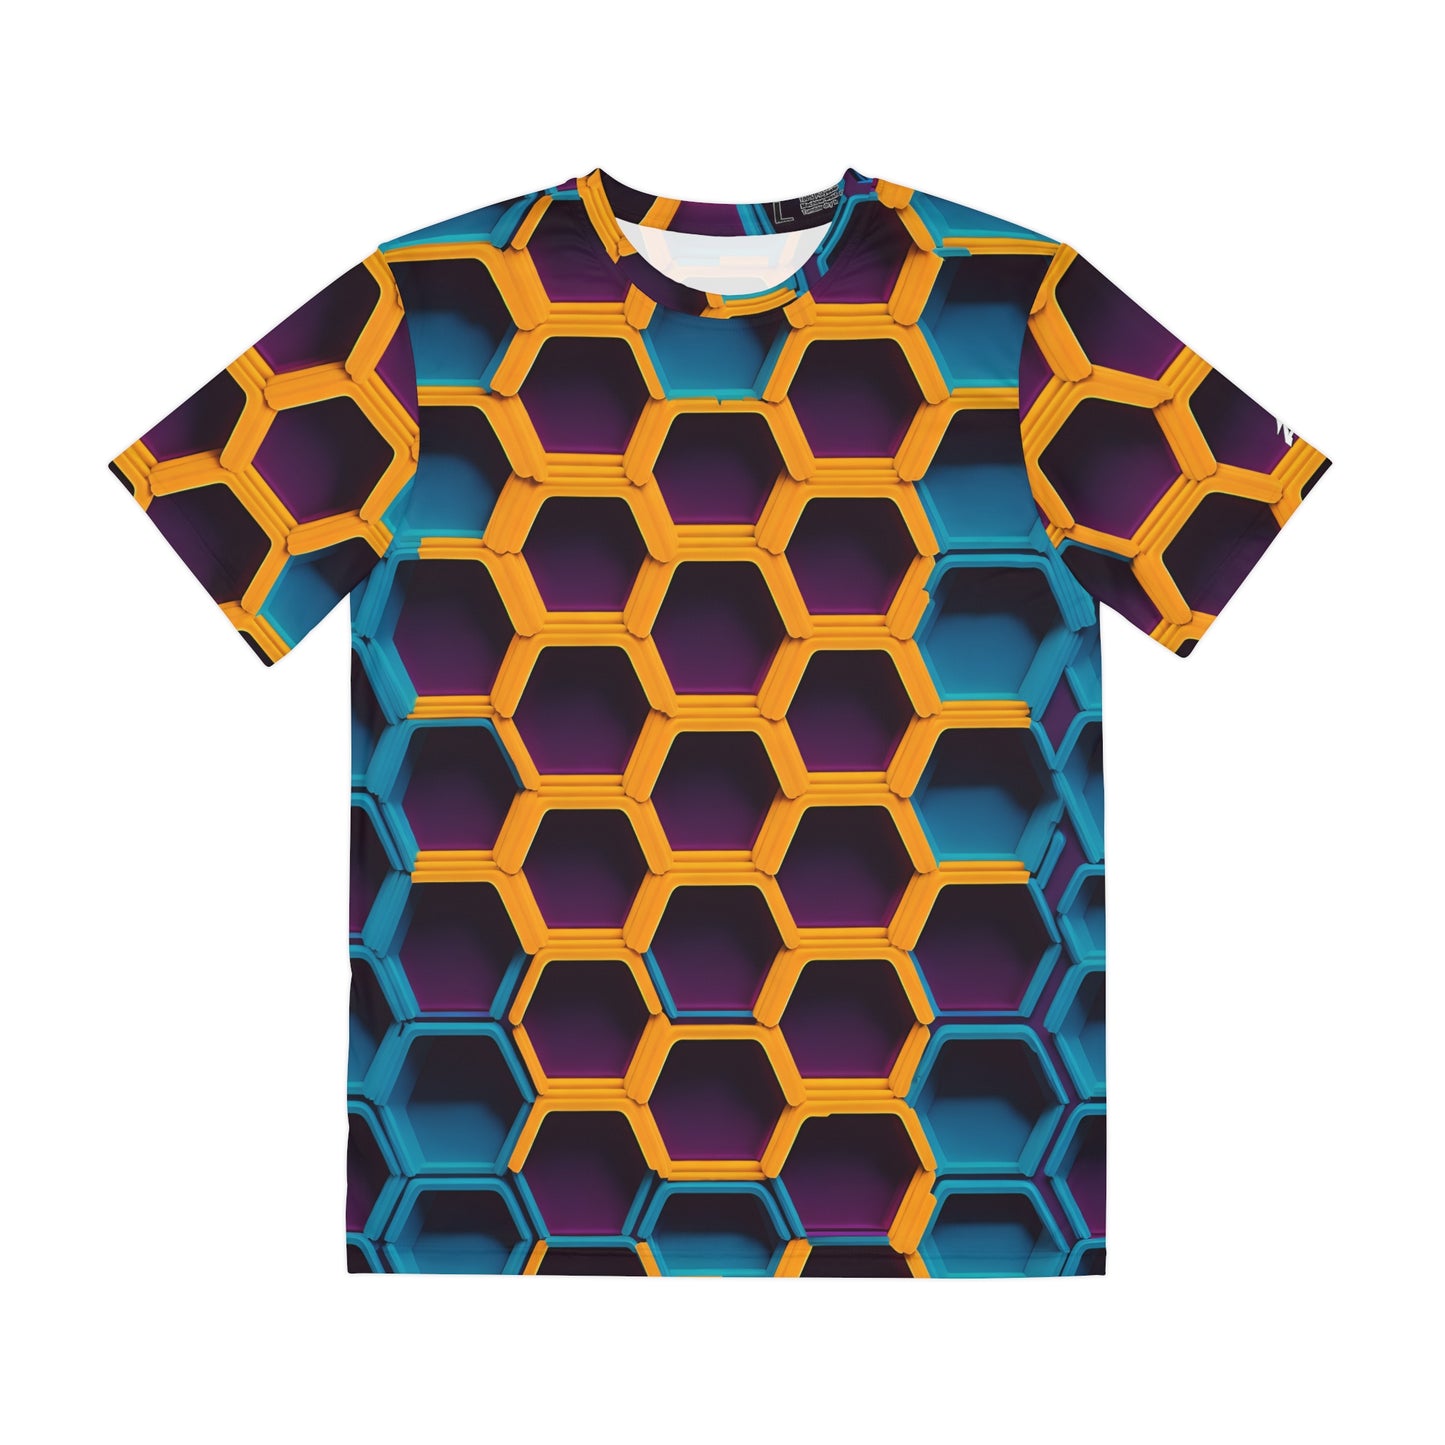 Luminous Hexagons: Neon Honeycomb